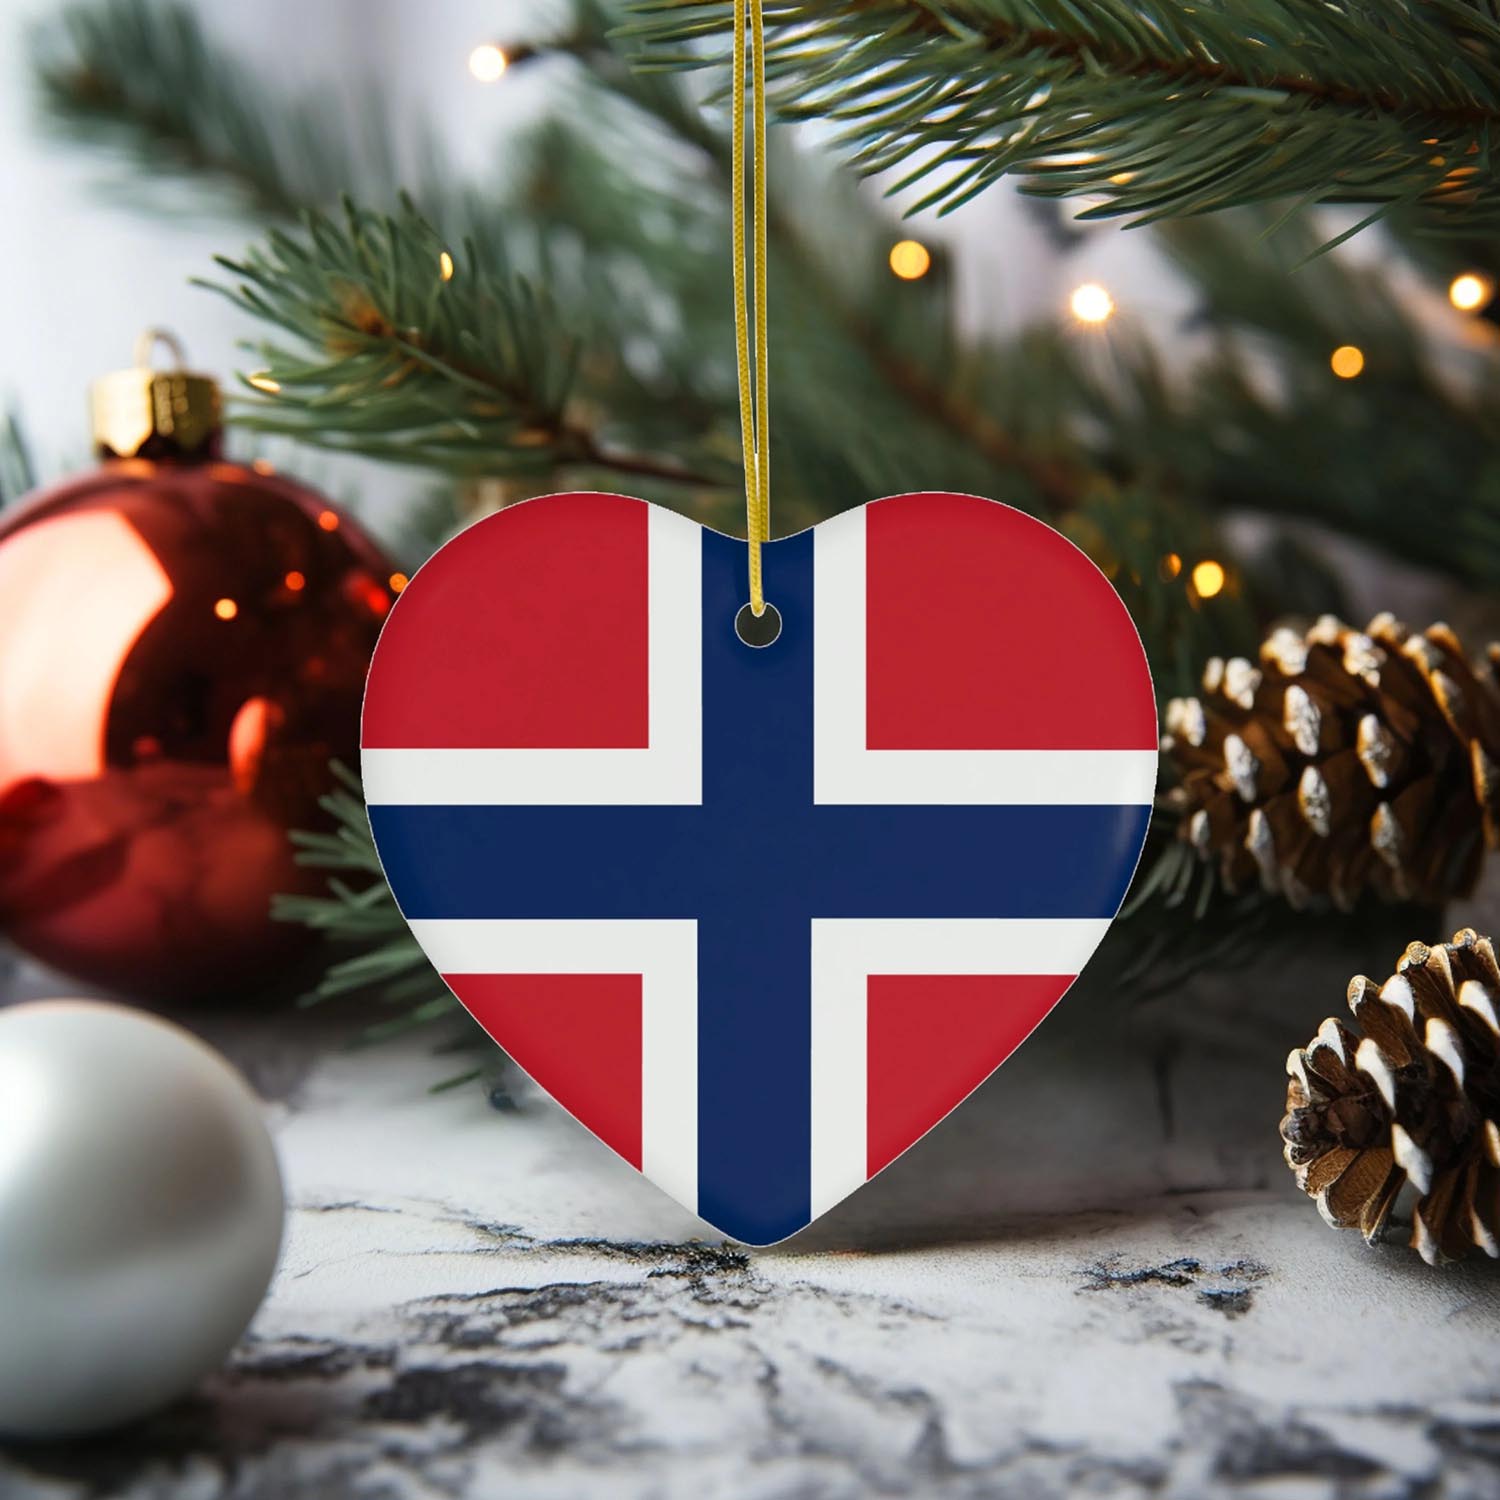 Norwegian Christmas